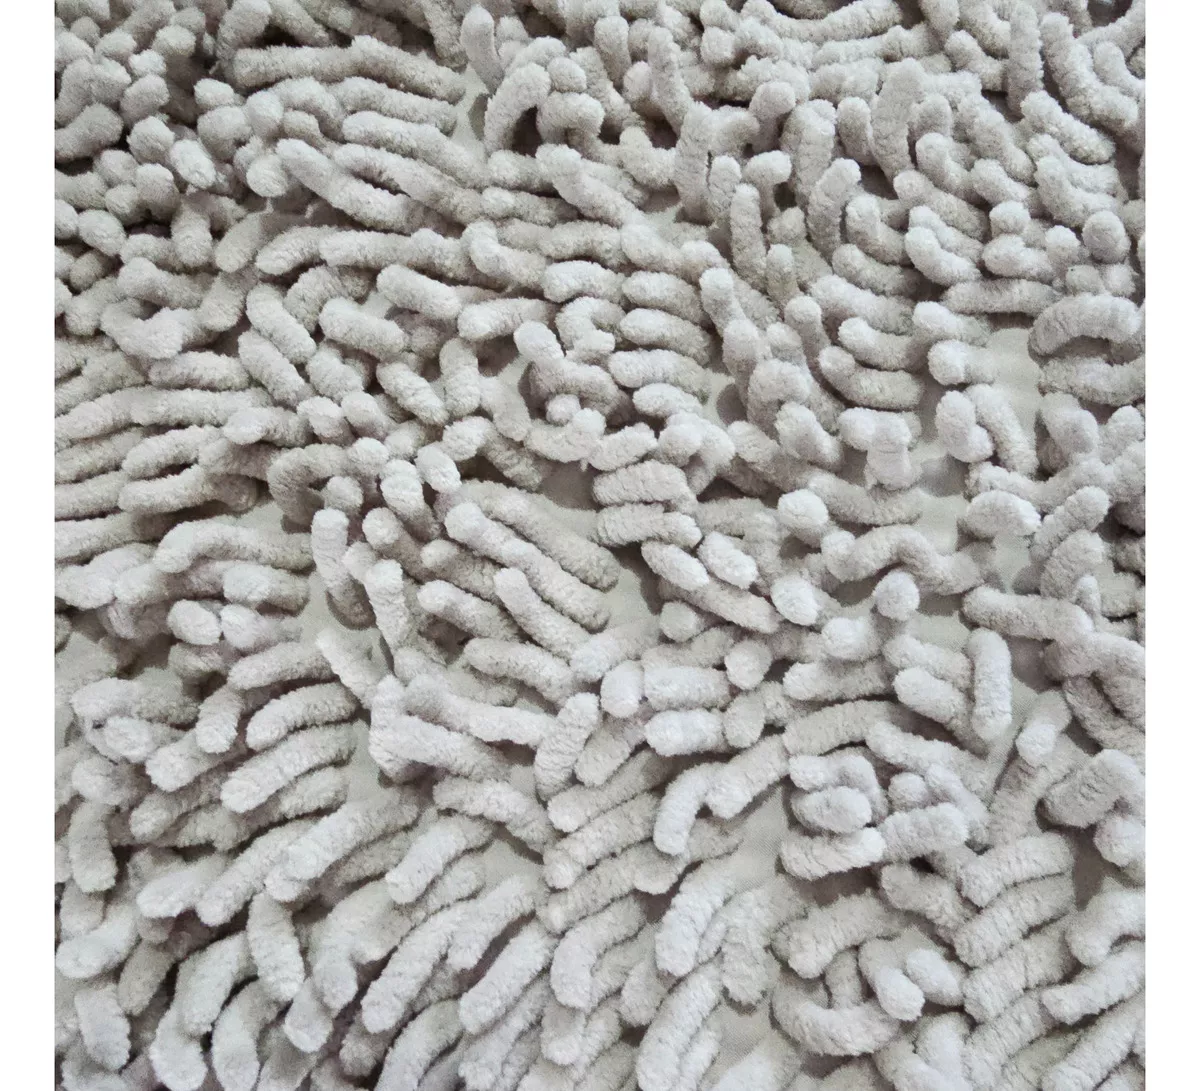 Tercera imagen para búsqueda de alfombra de piedra absorbente